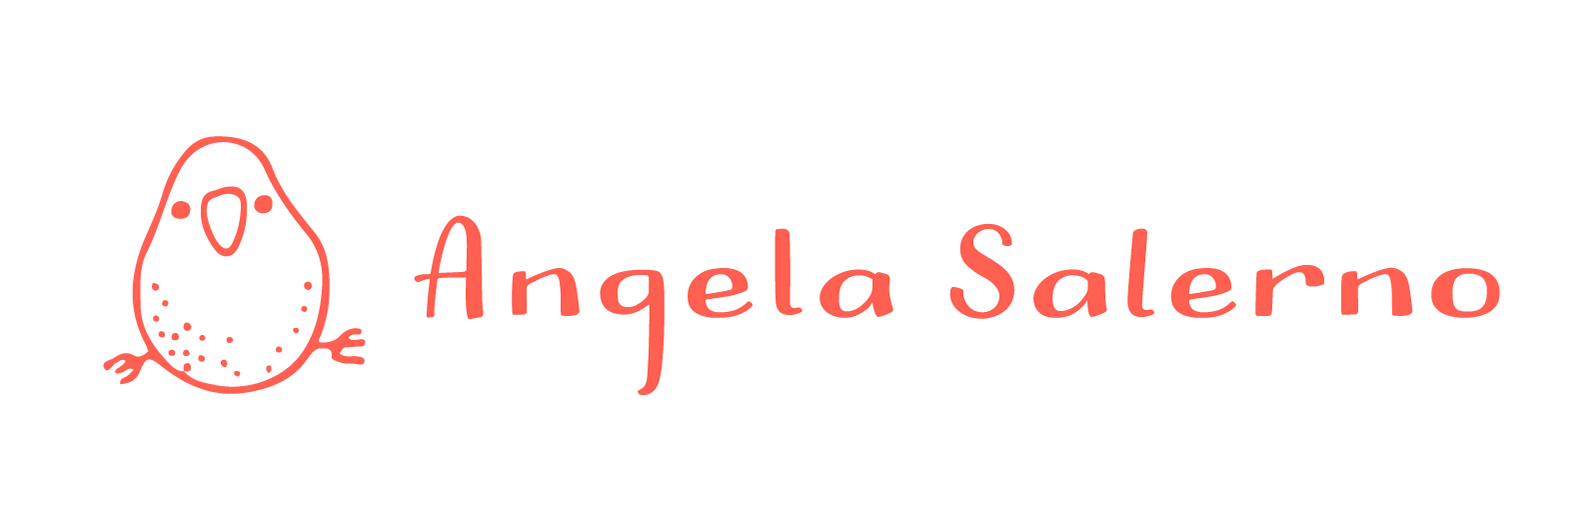 Angela Salerno